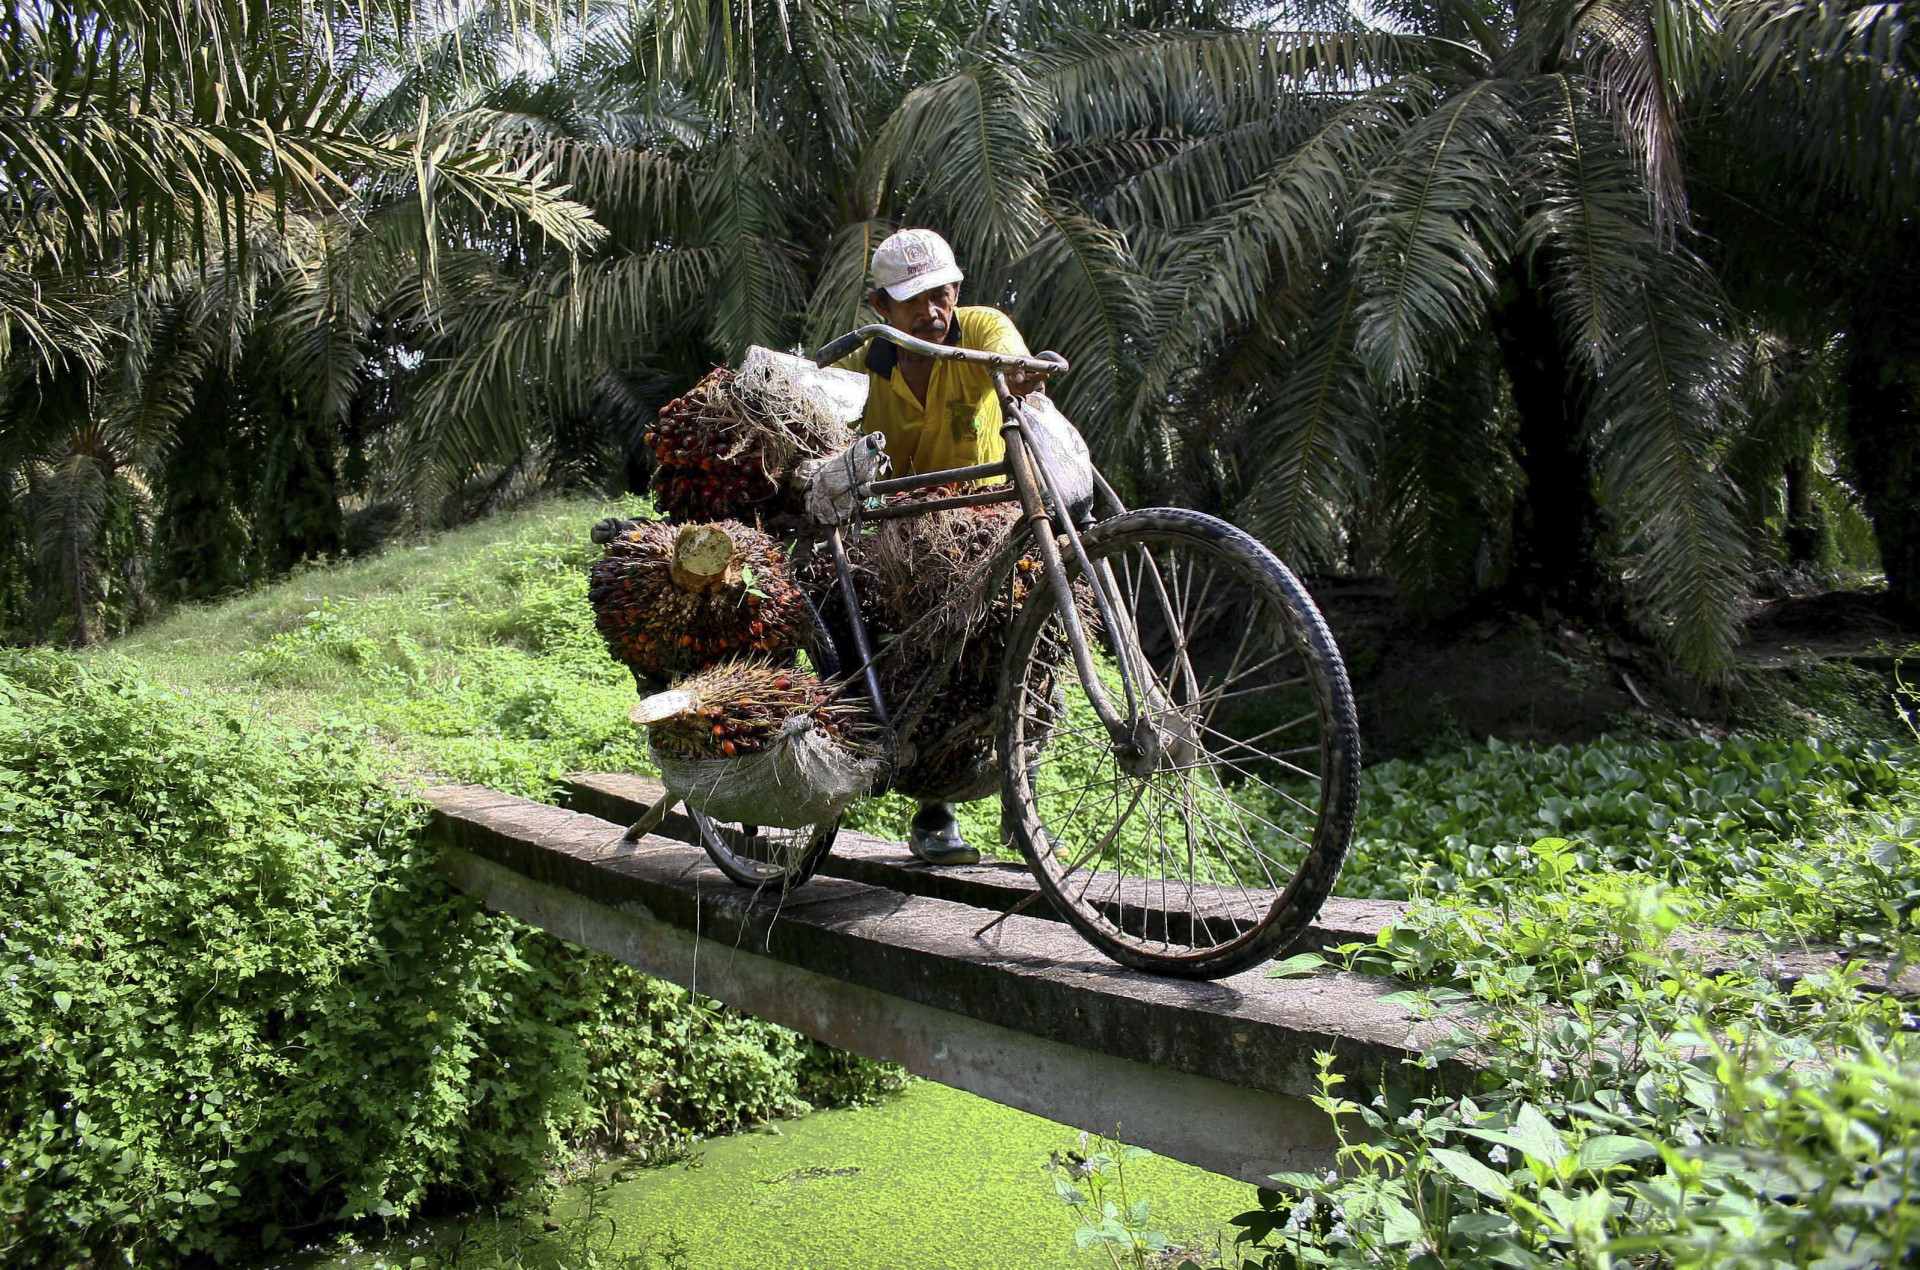 Un ouvrier transporte des fruits de palmier sur un vélo, au cœur d'une plantation, au nord de Sumatra, en Indonésie.<p>Tu pourrais aussi aimer:<a href="https://www.starsinsider.com/n/264234?utm_source=msn.com&utm_medium=display&utm_campaign=referral_description&utm_content=311388v1"> Les races de chiens à adopter si on a déjà un chat</a></p>